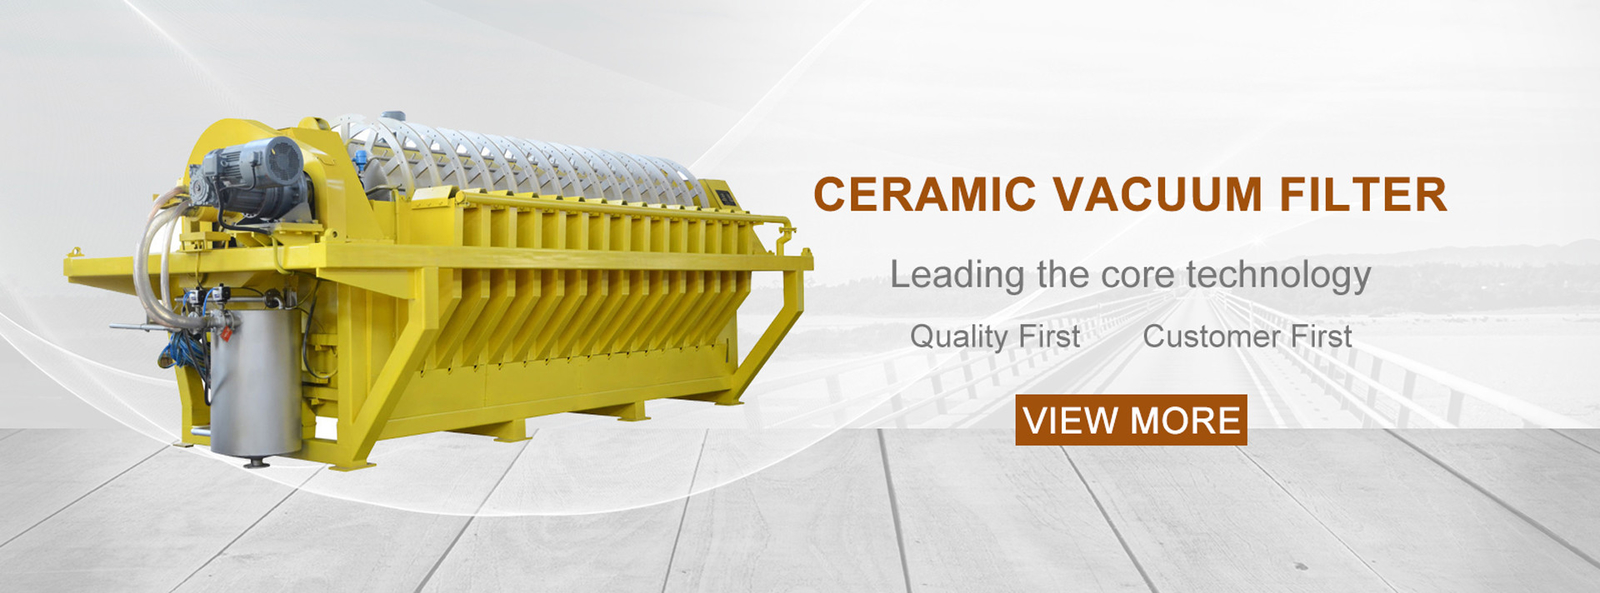 quality Ceramic Vacuum Filter factory